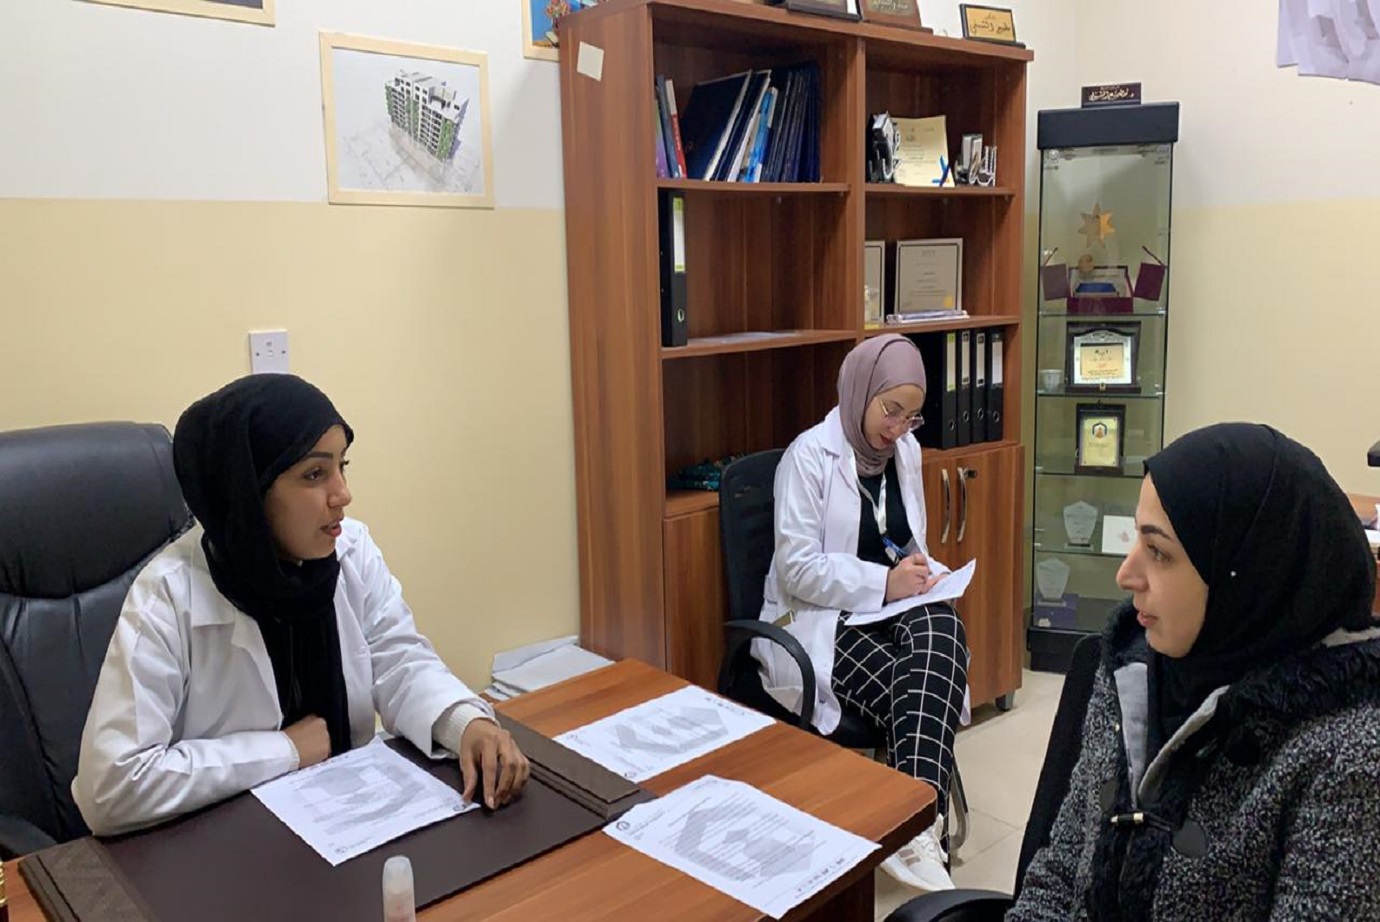 لأول مرة في الأردن صيدلة "عمان العربية" تعقد الامتحان الموضوعي السريري لطلبتها3